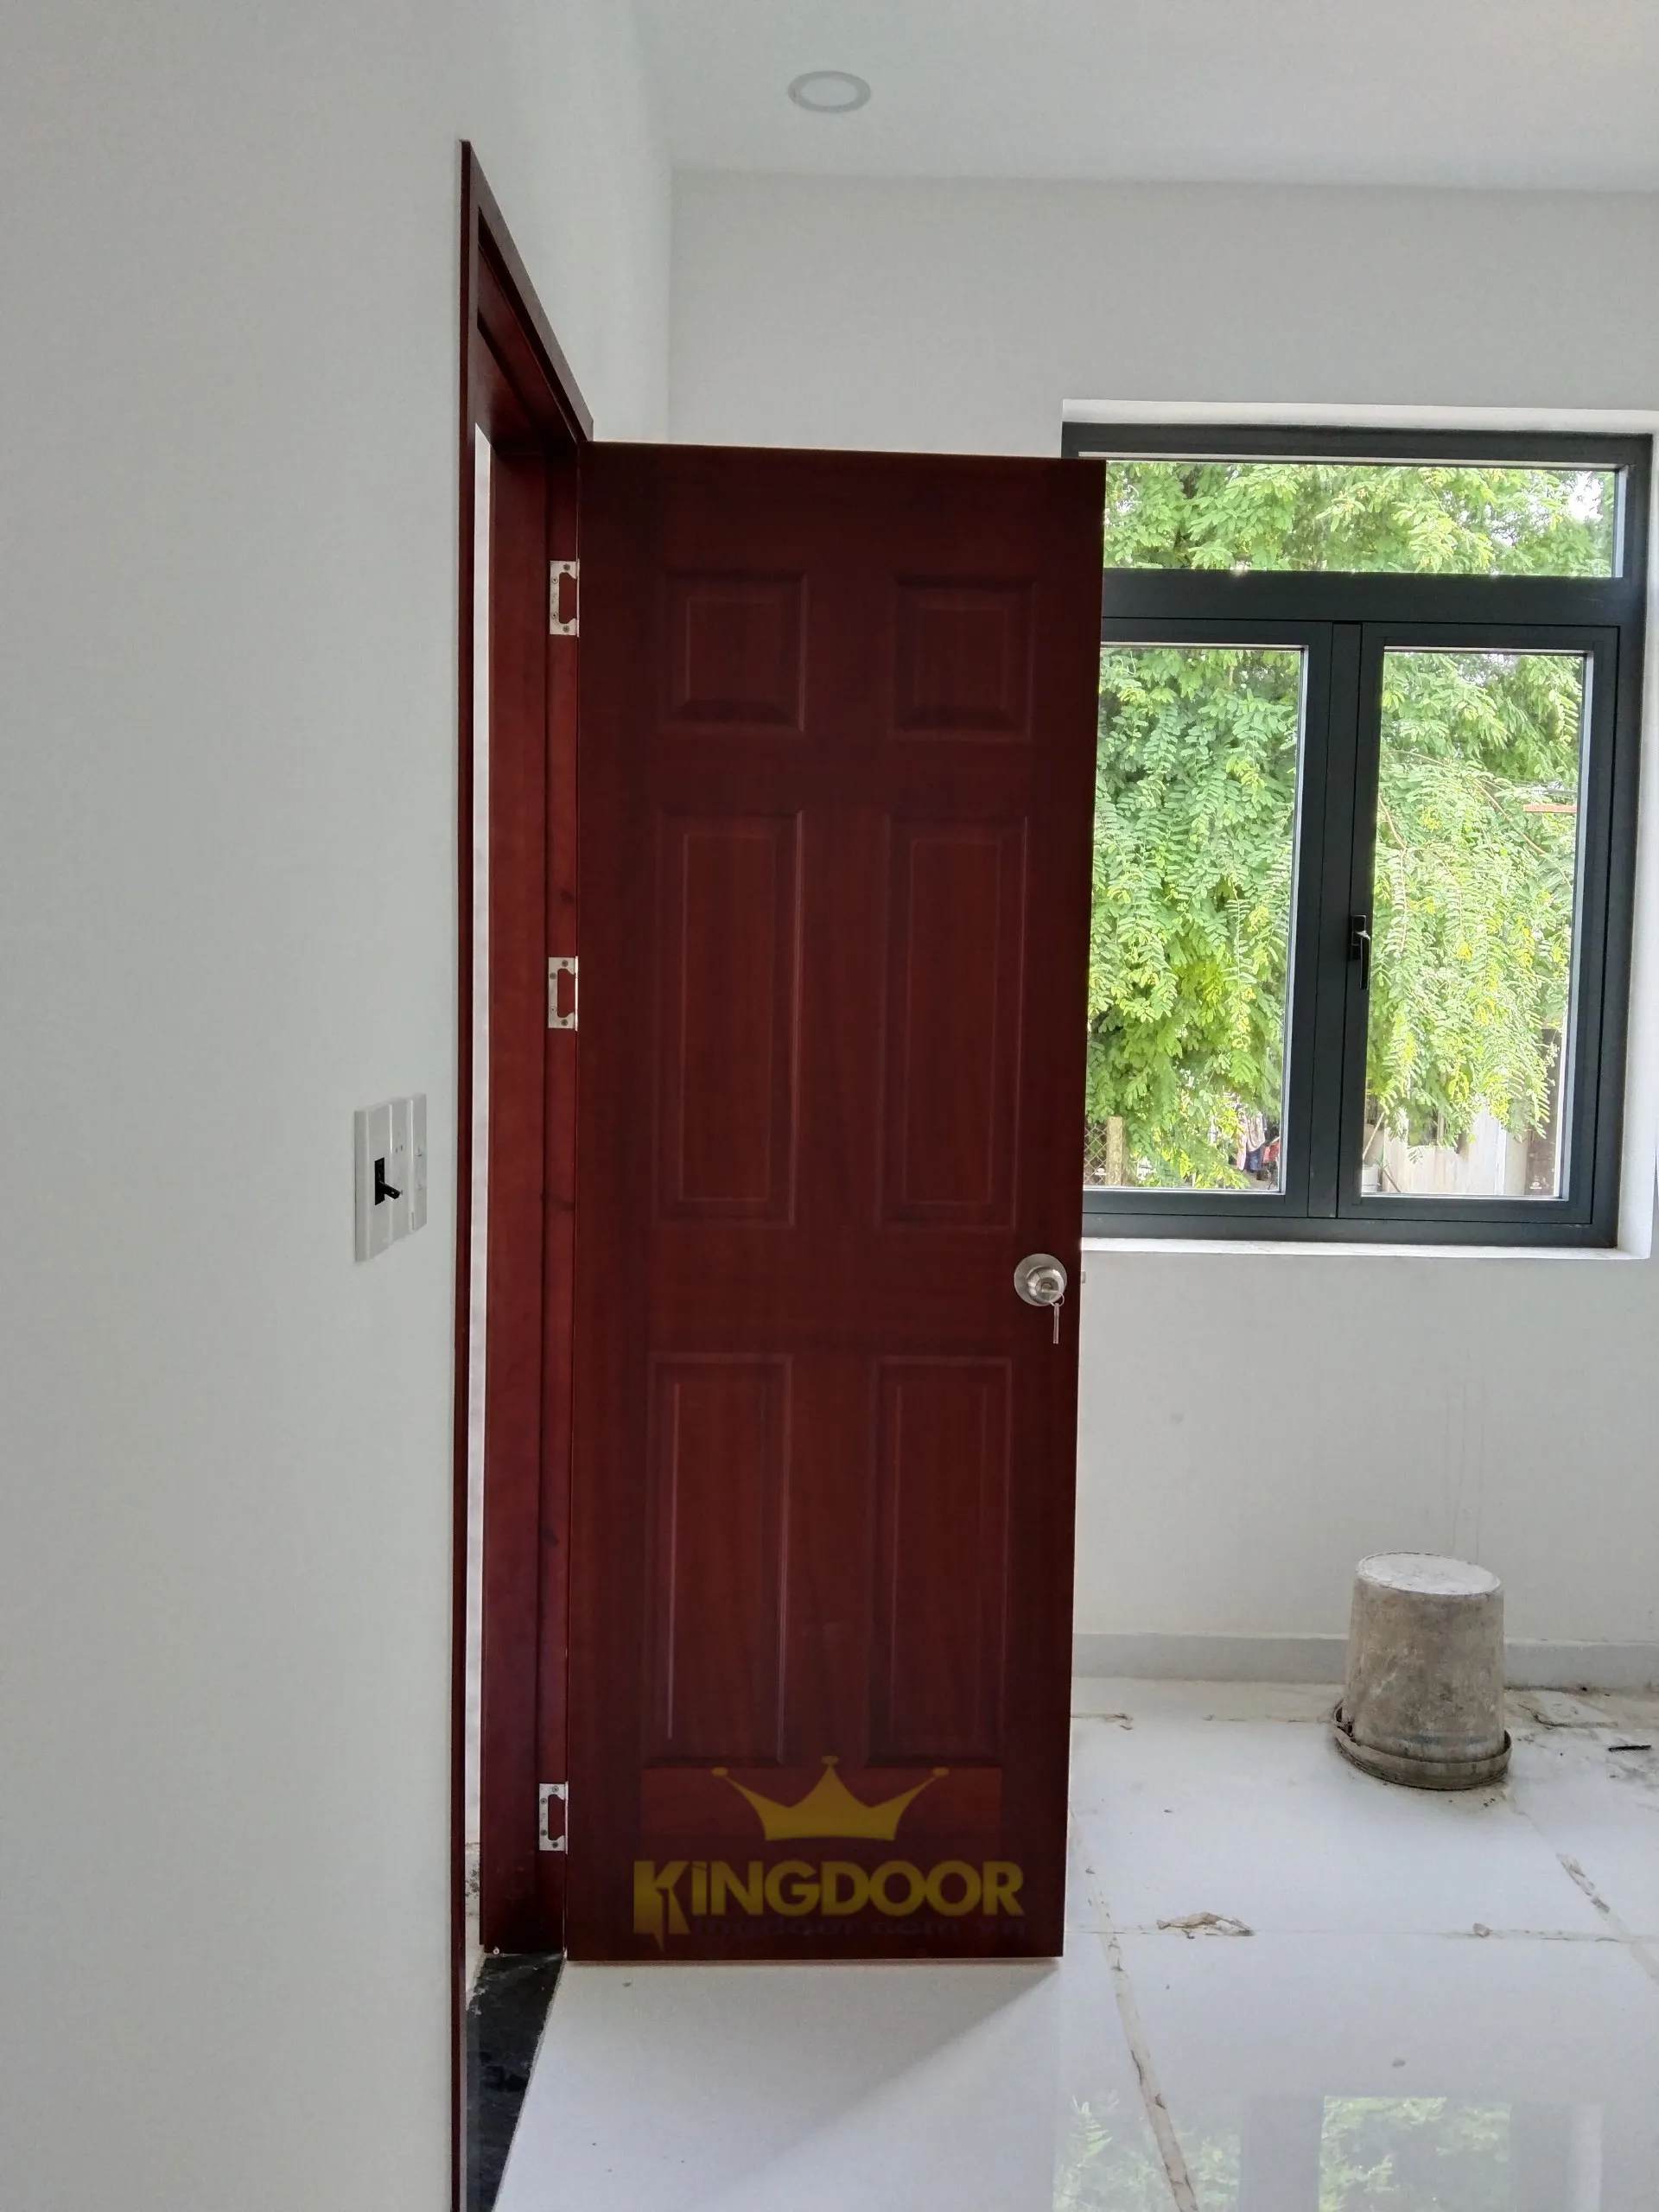 Kingdoor thi công lắp dựng hoàn thiện mẫu cửa gỗ phòng ngủ HDF Veneer tại Đồng Nai.